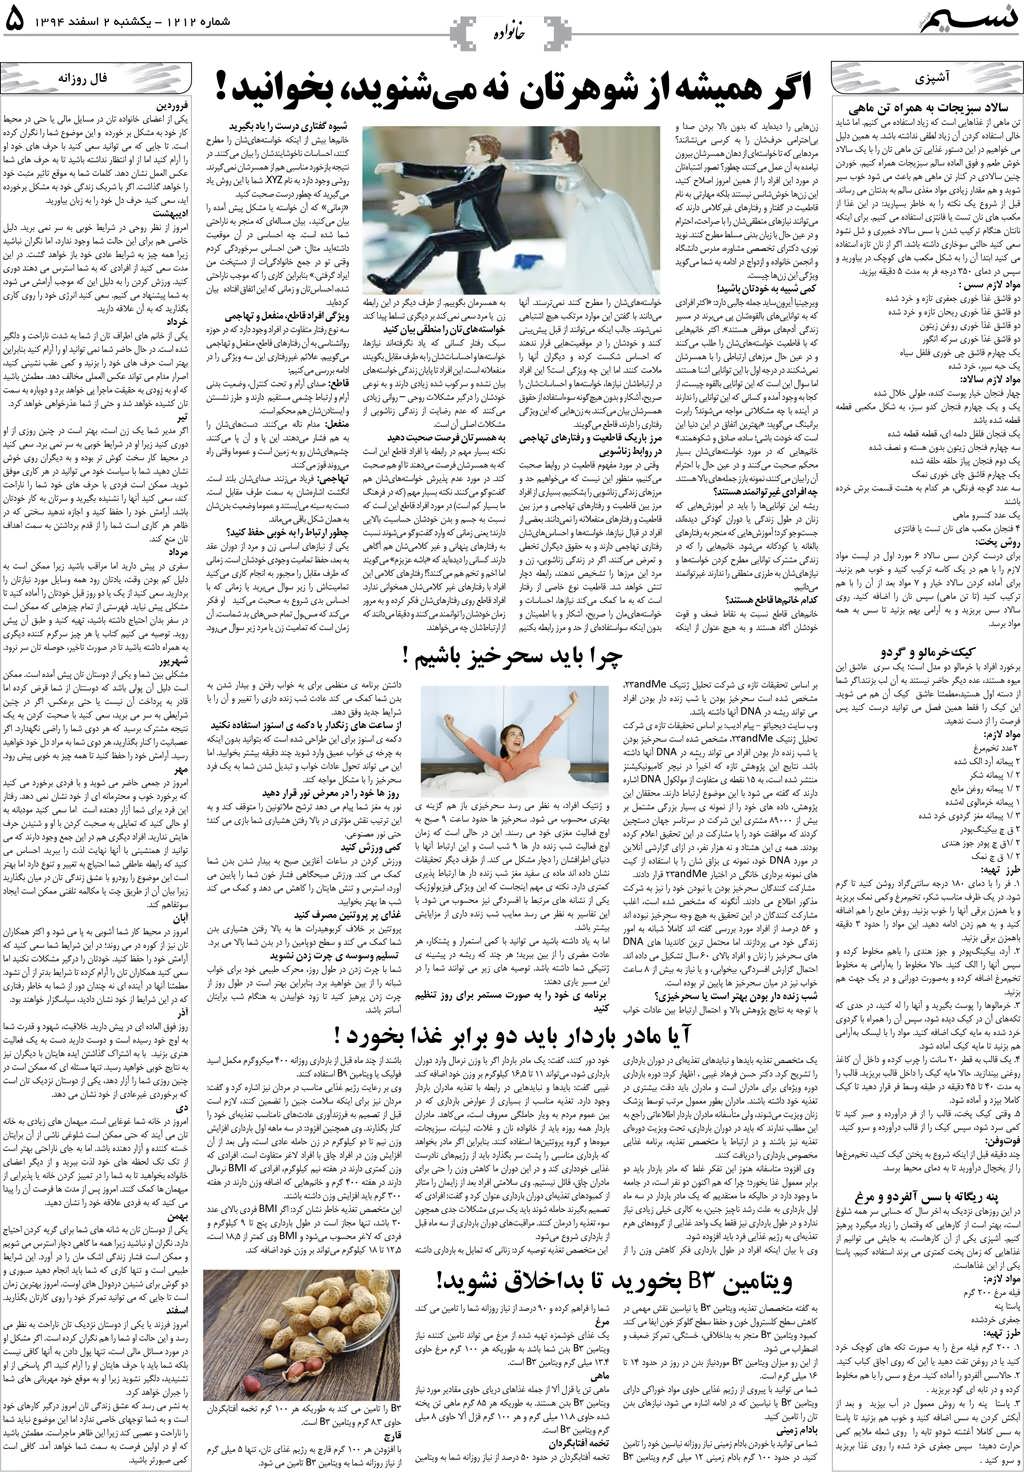 صفحه خانواده روزنامه نسیم شماره 1212